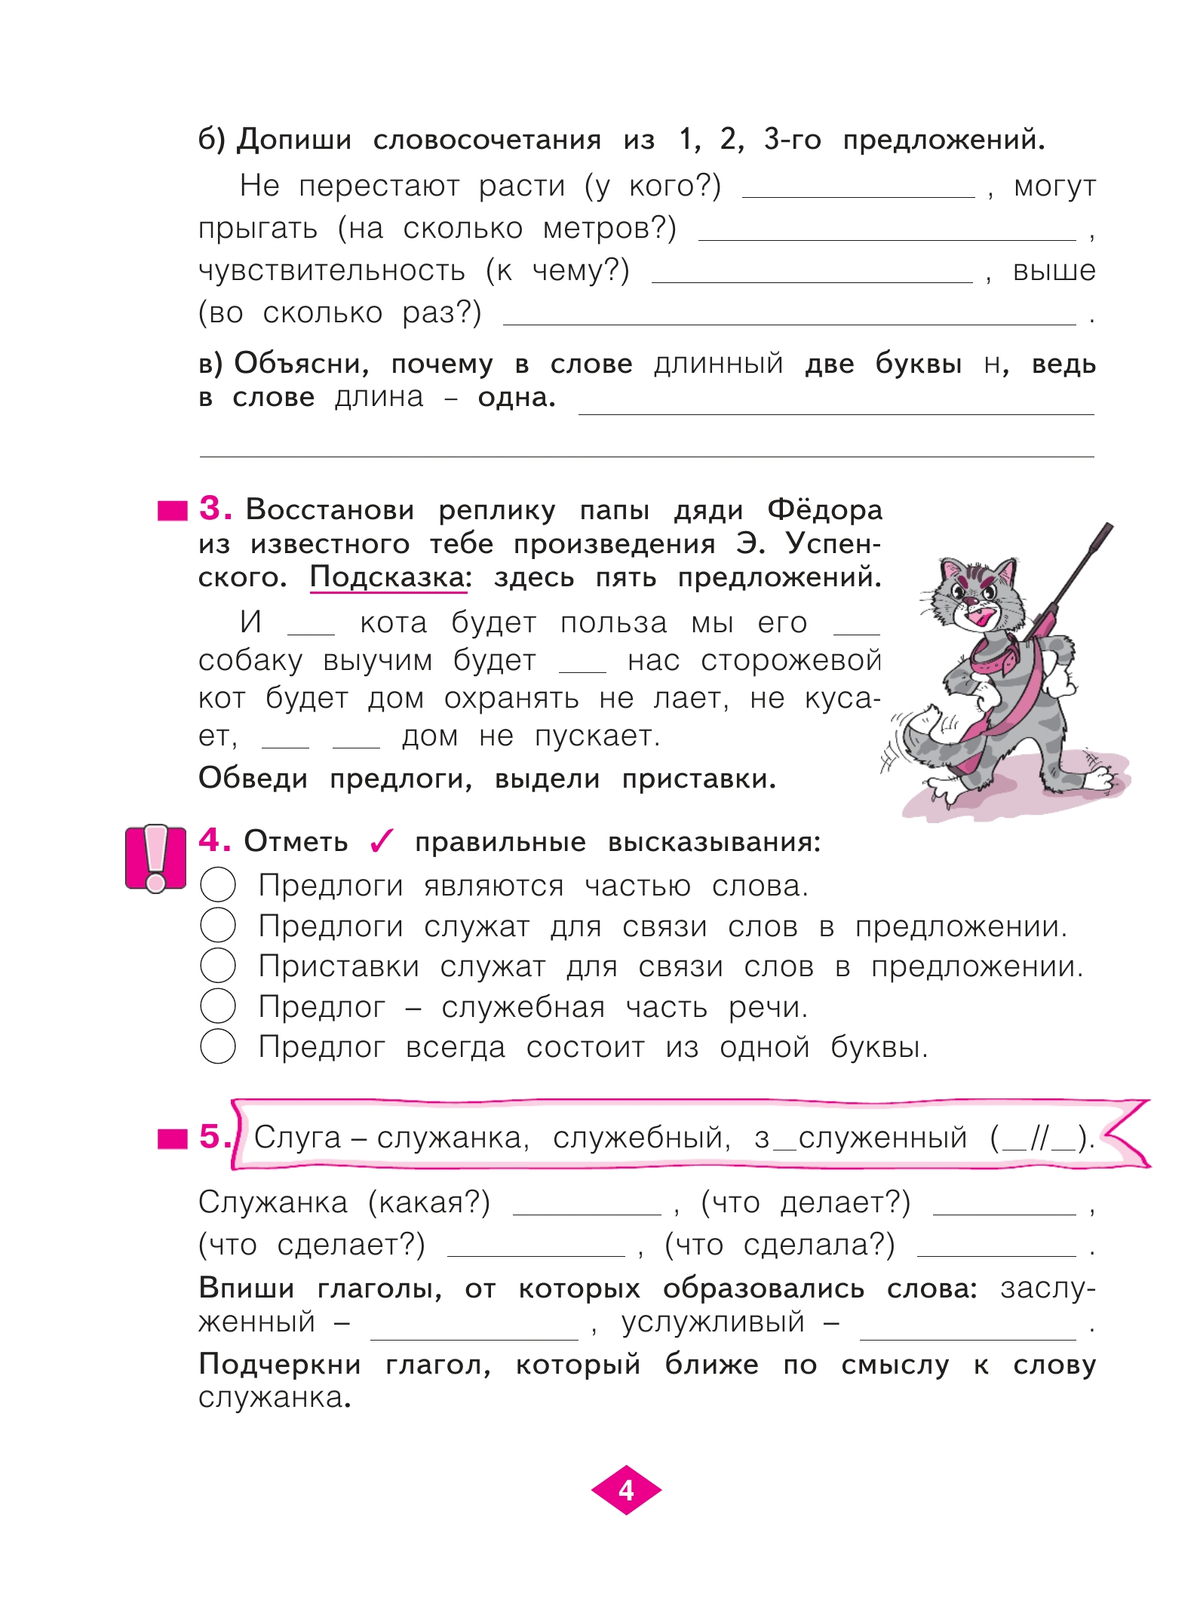 Русский язык. Рабочая тетрадь. 3 класс. В 4-х частях. Часть 2 5